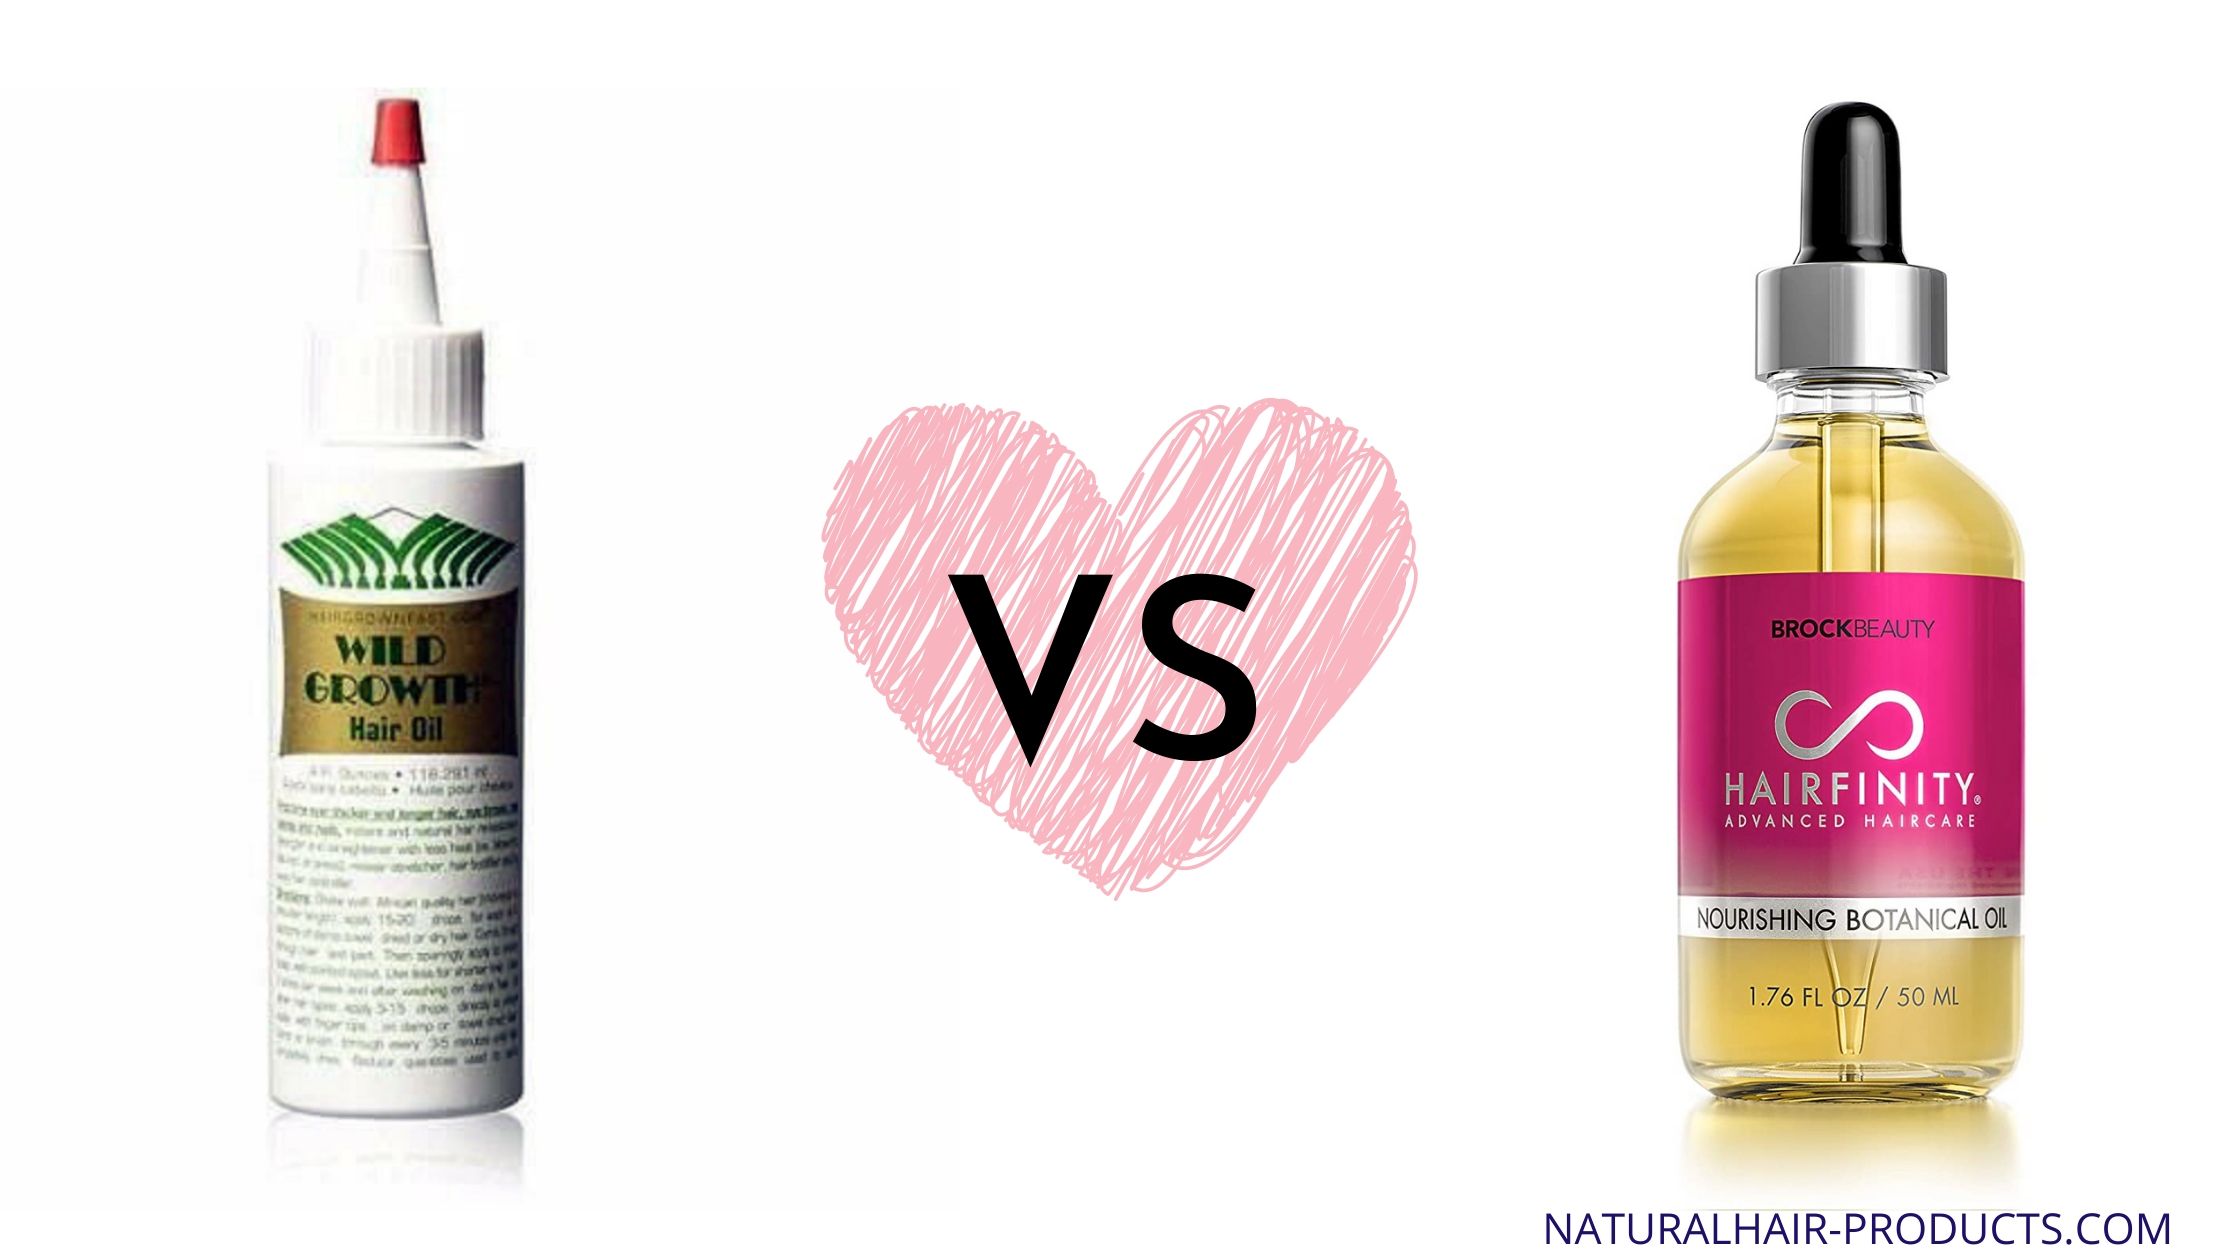 Wild Growth hair oil for edges versus Hairfinity Botanical Hair Oil